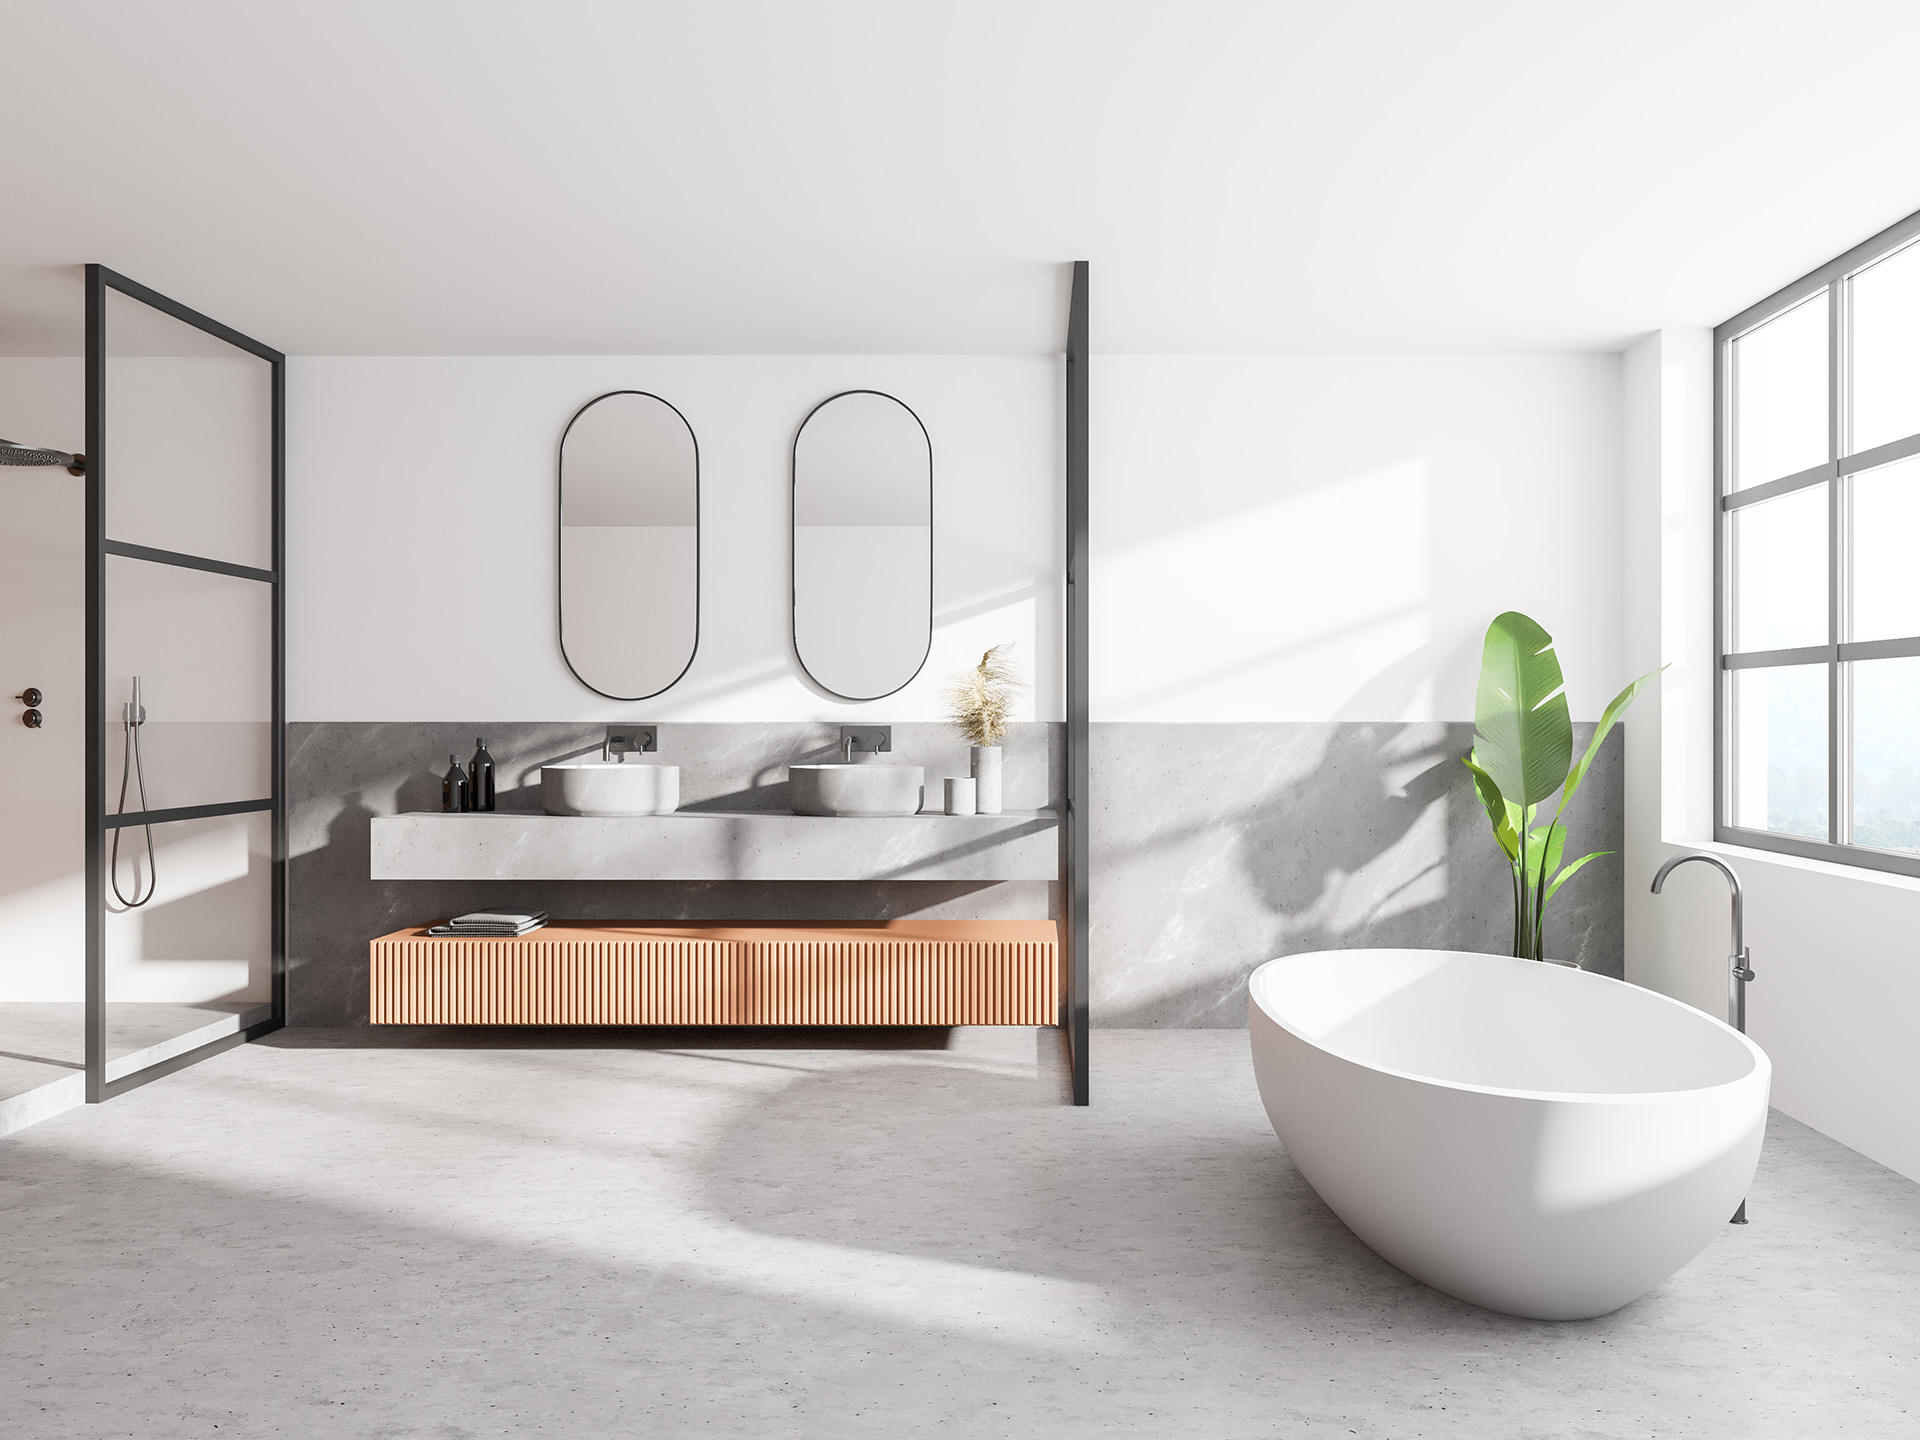 Badkamer zonder voegen – stijlvolle trend met praktische voordelen